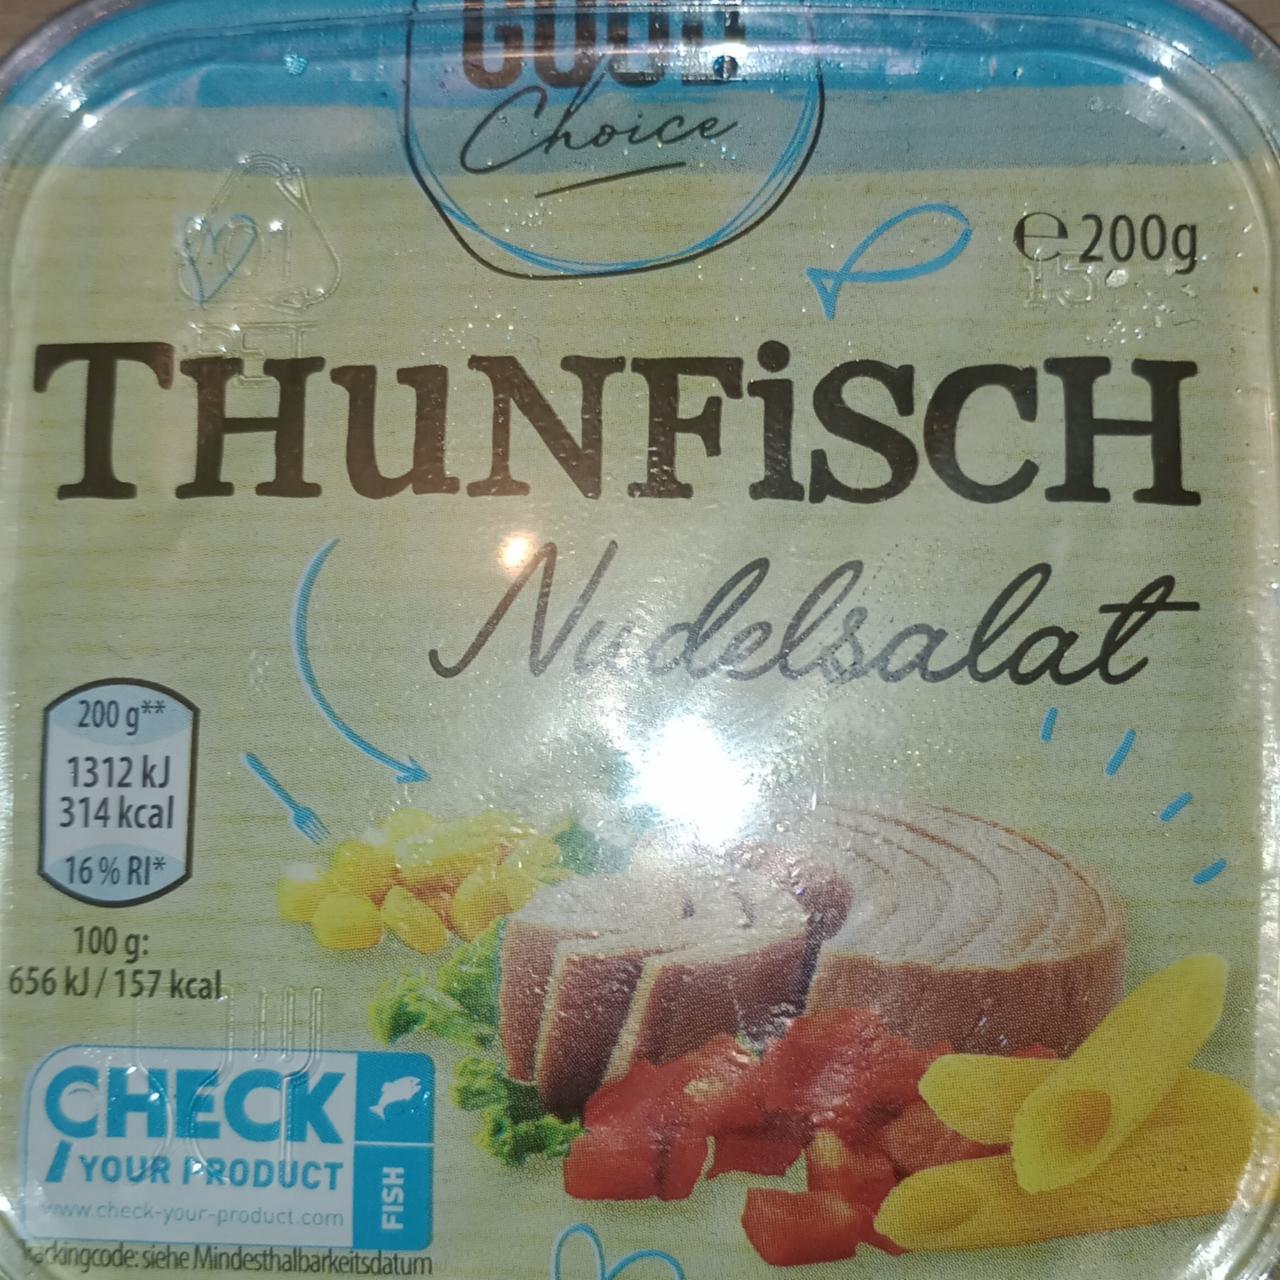 Fotografie - Tunfisch Nudelsalat Good Choice